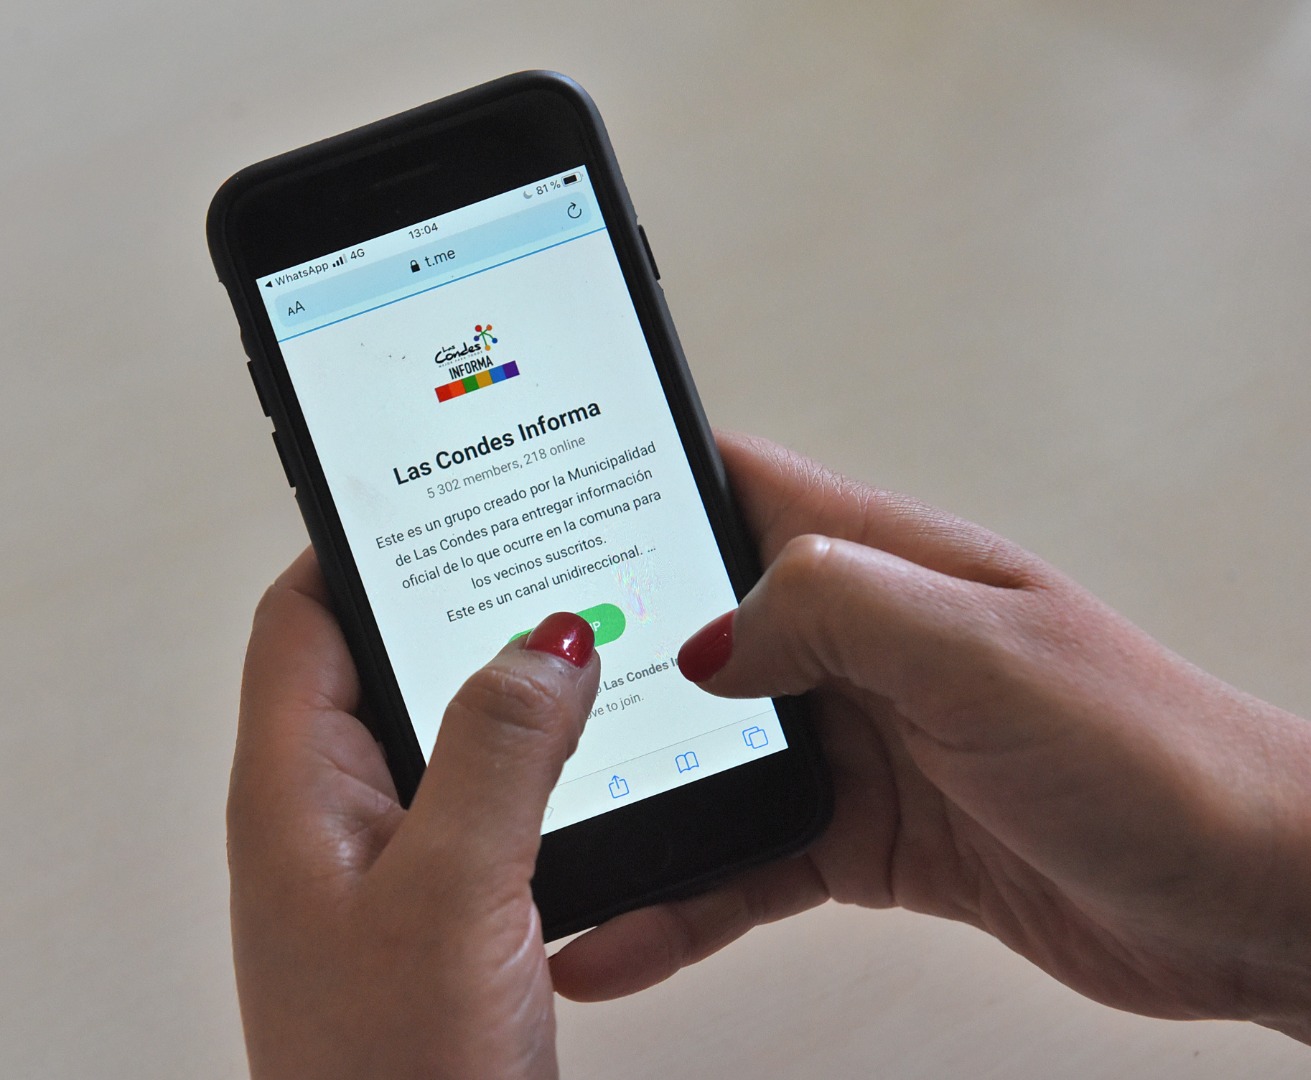 Las Condes informa a través de App Telegram